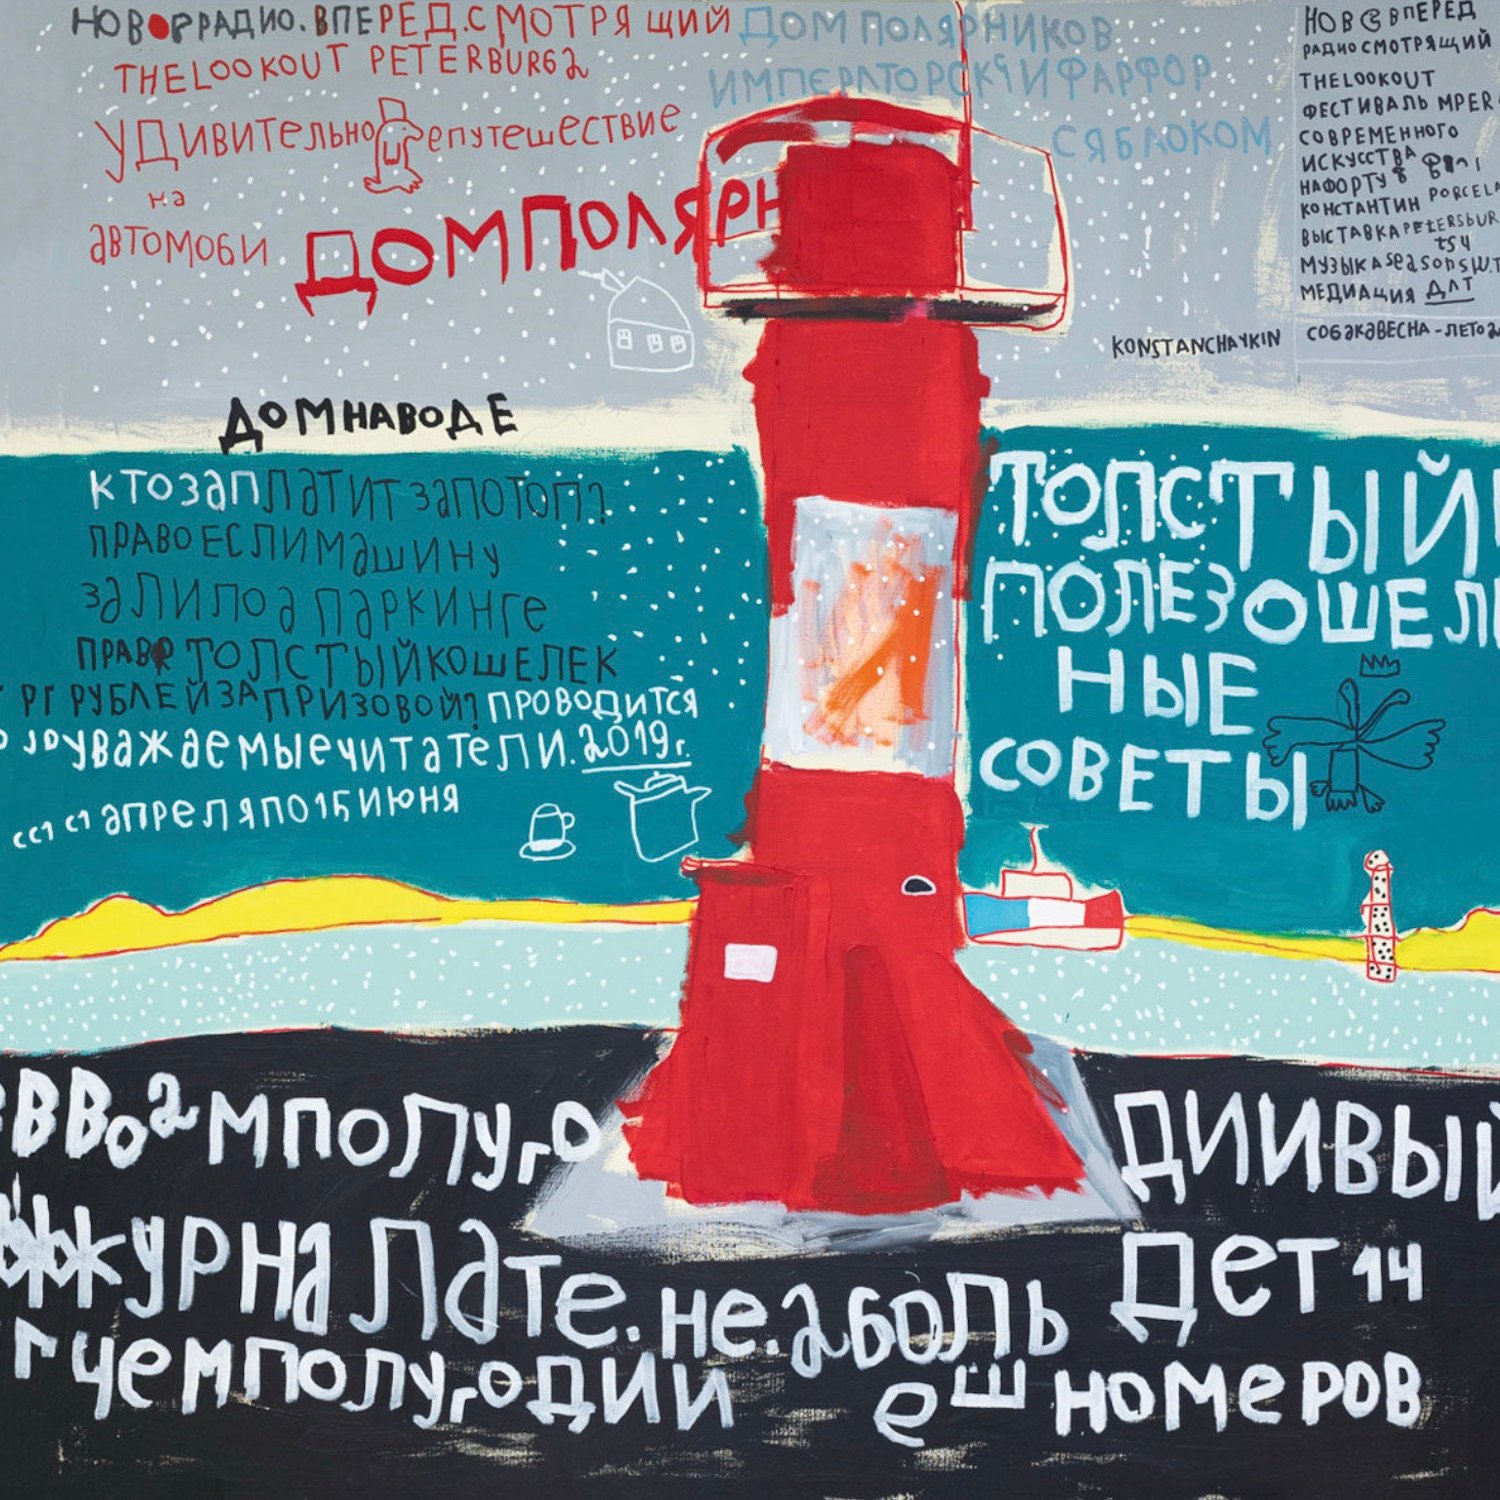 Image: Zoika, Lighthouse